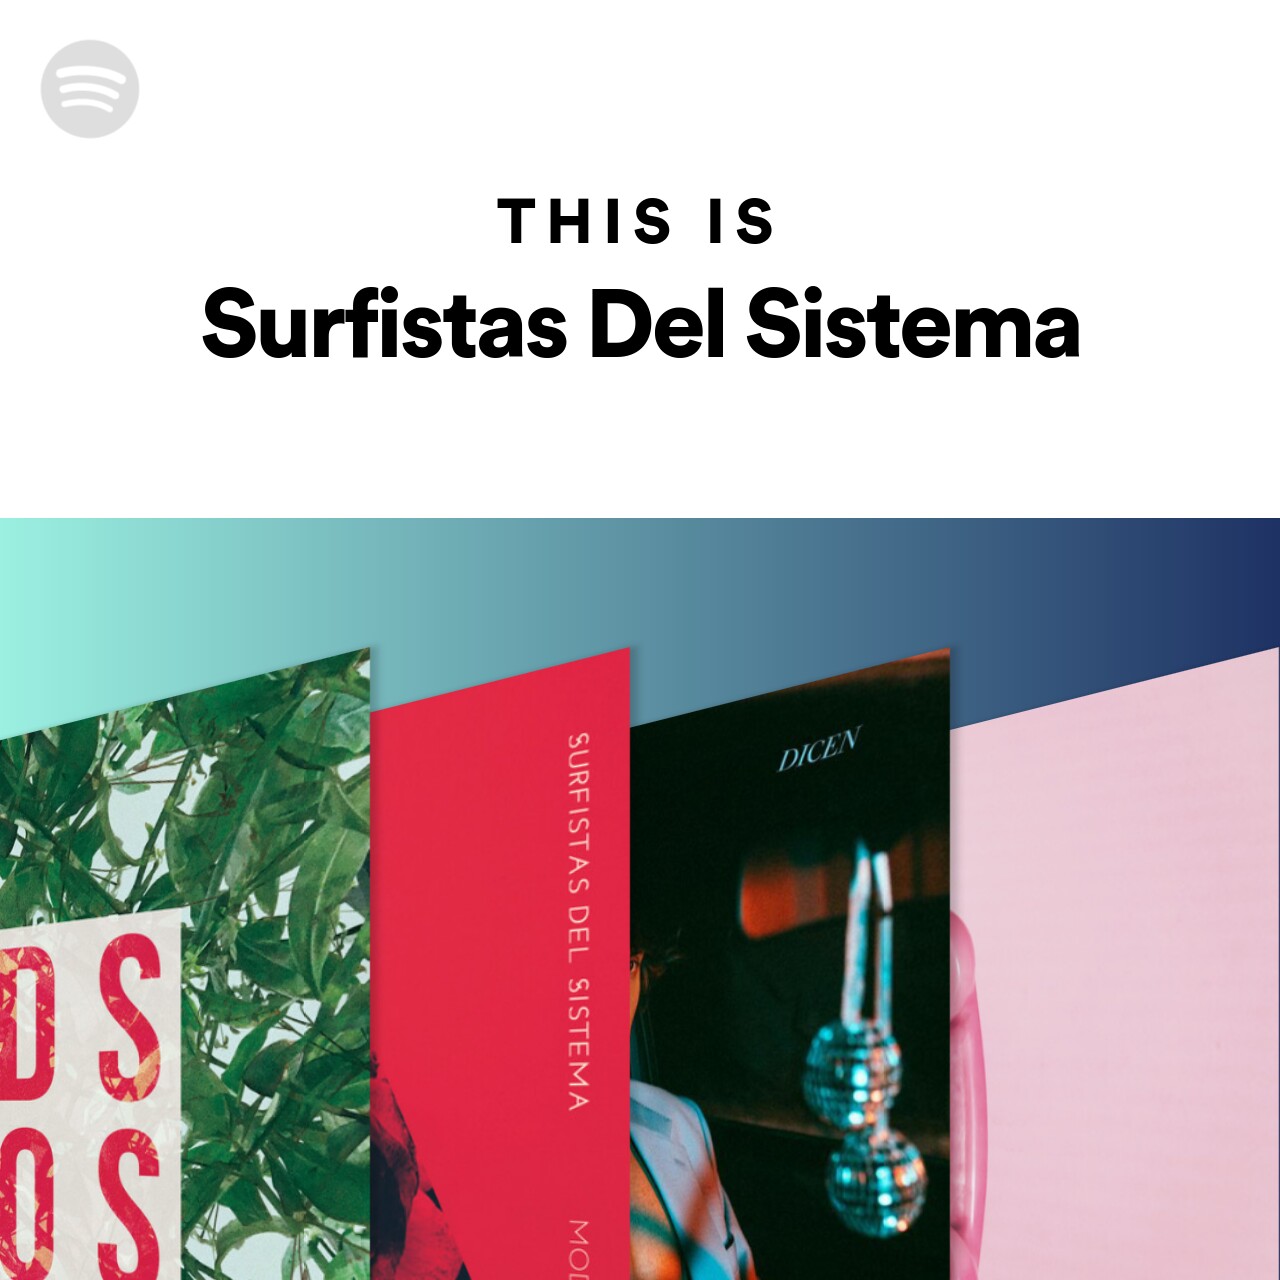 This Is Surfistas Del Sistema